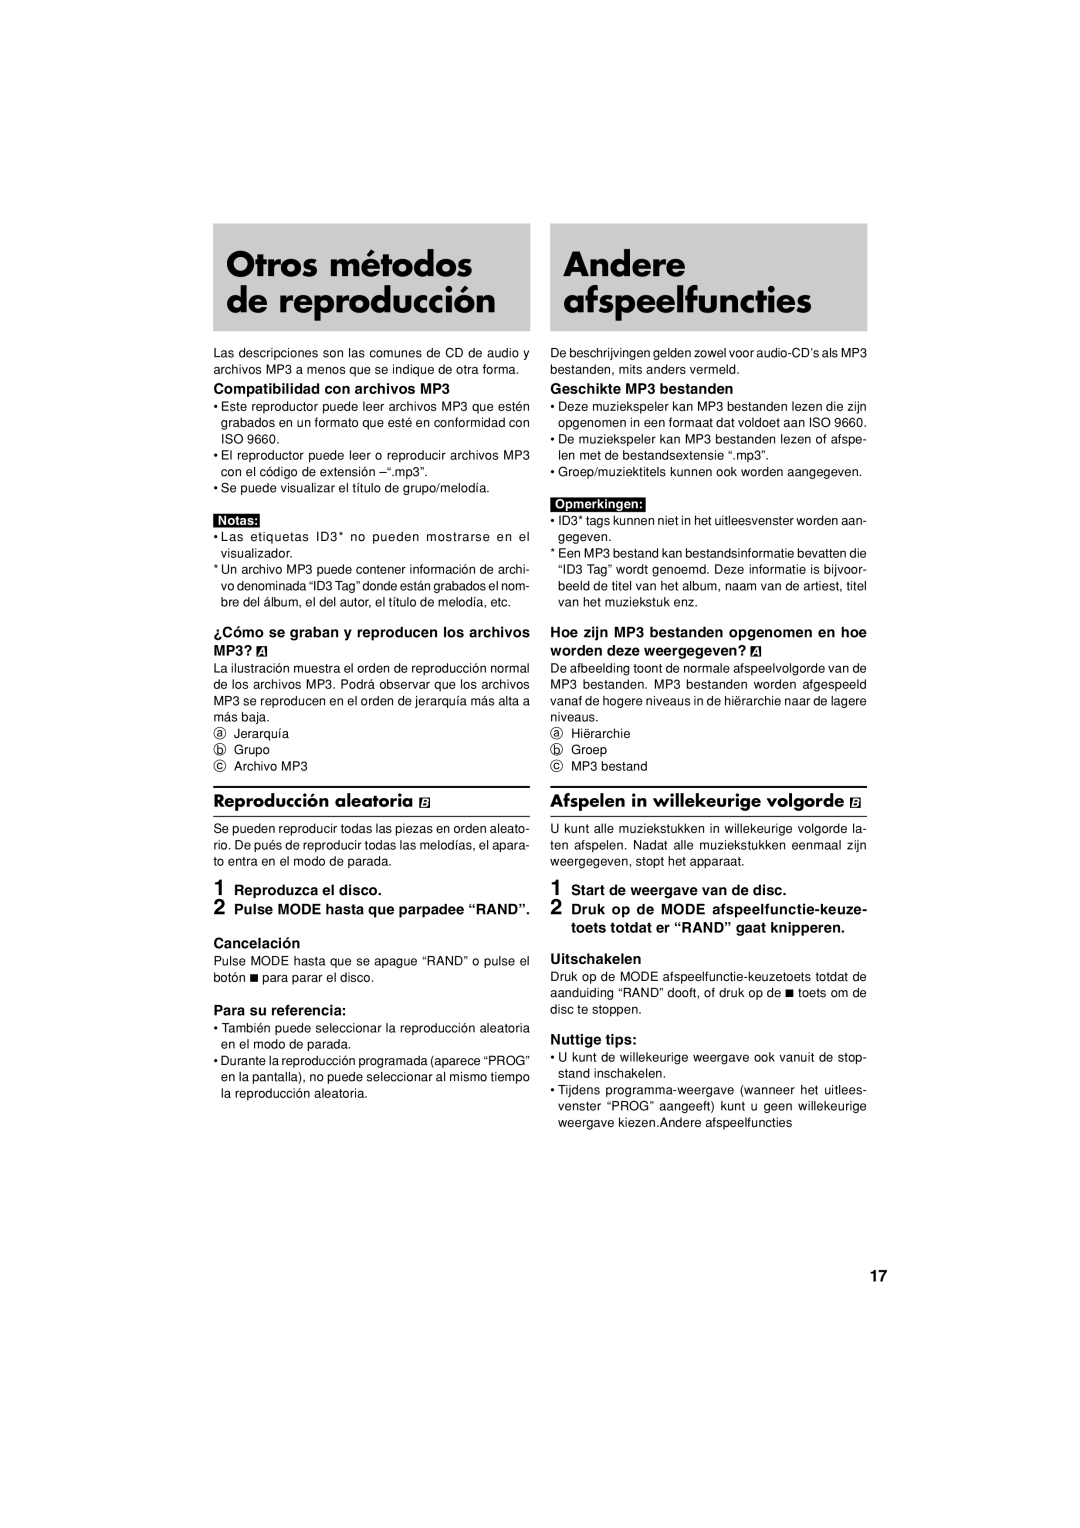 JVC XL-PM20SL manual Otros métodos, Andere, de reproducción, afspeelfuncties, Reproducción aleatoria 